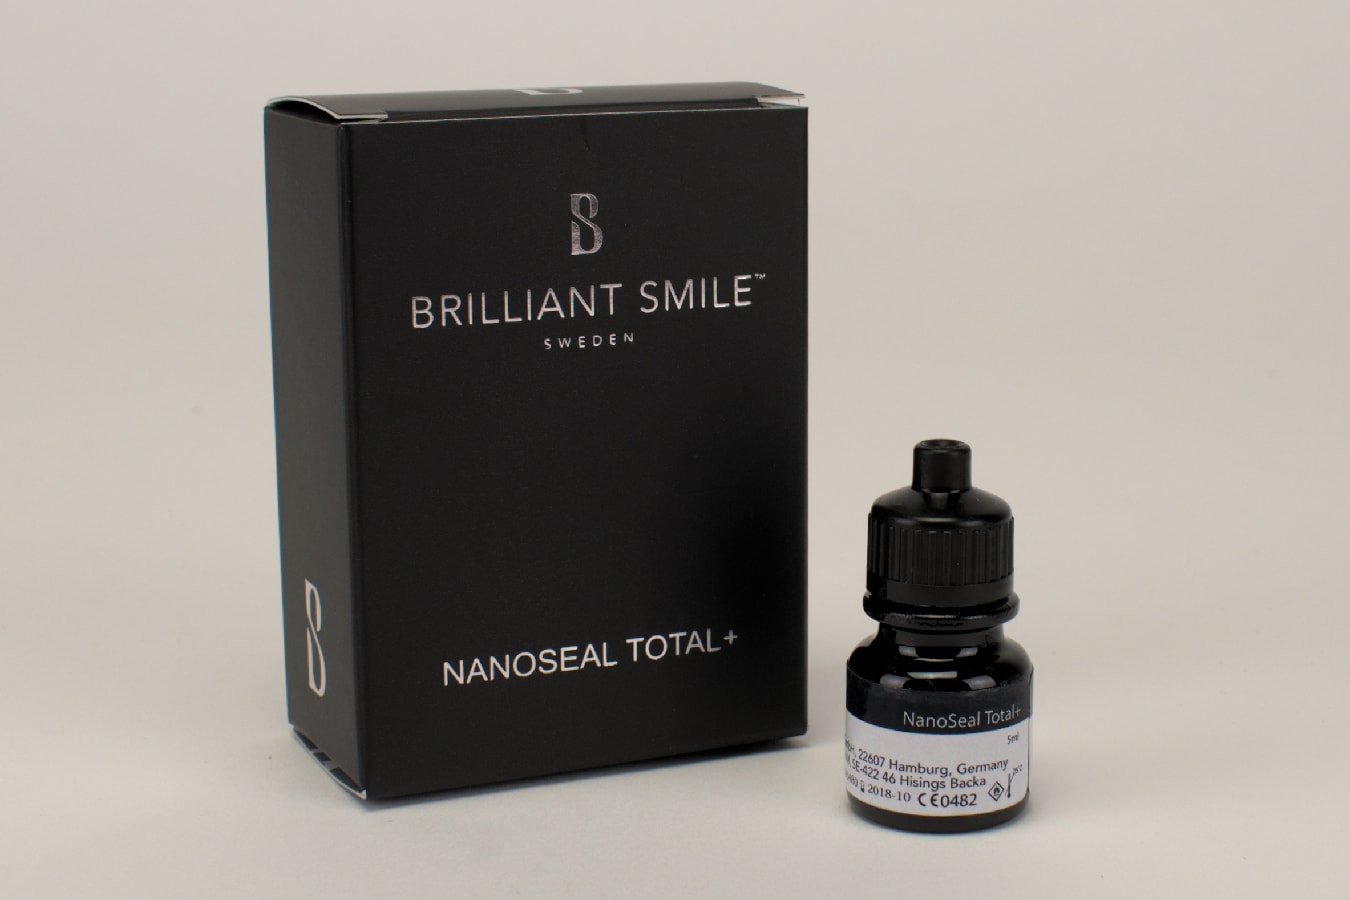 Brilliant Smile NanoSeal Total+